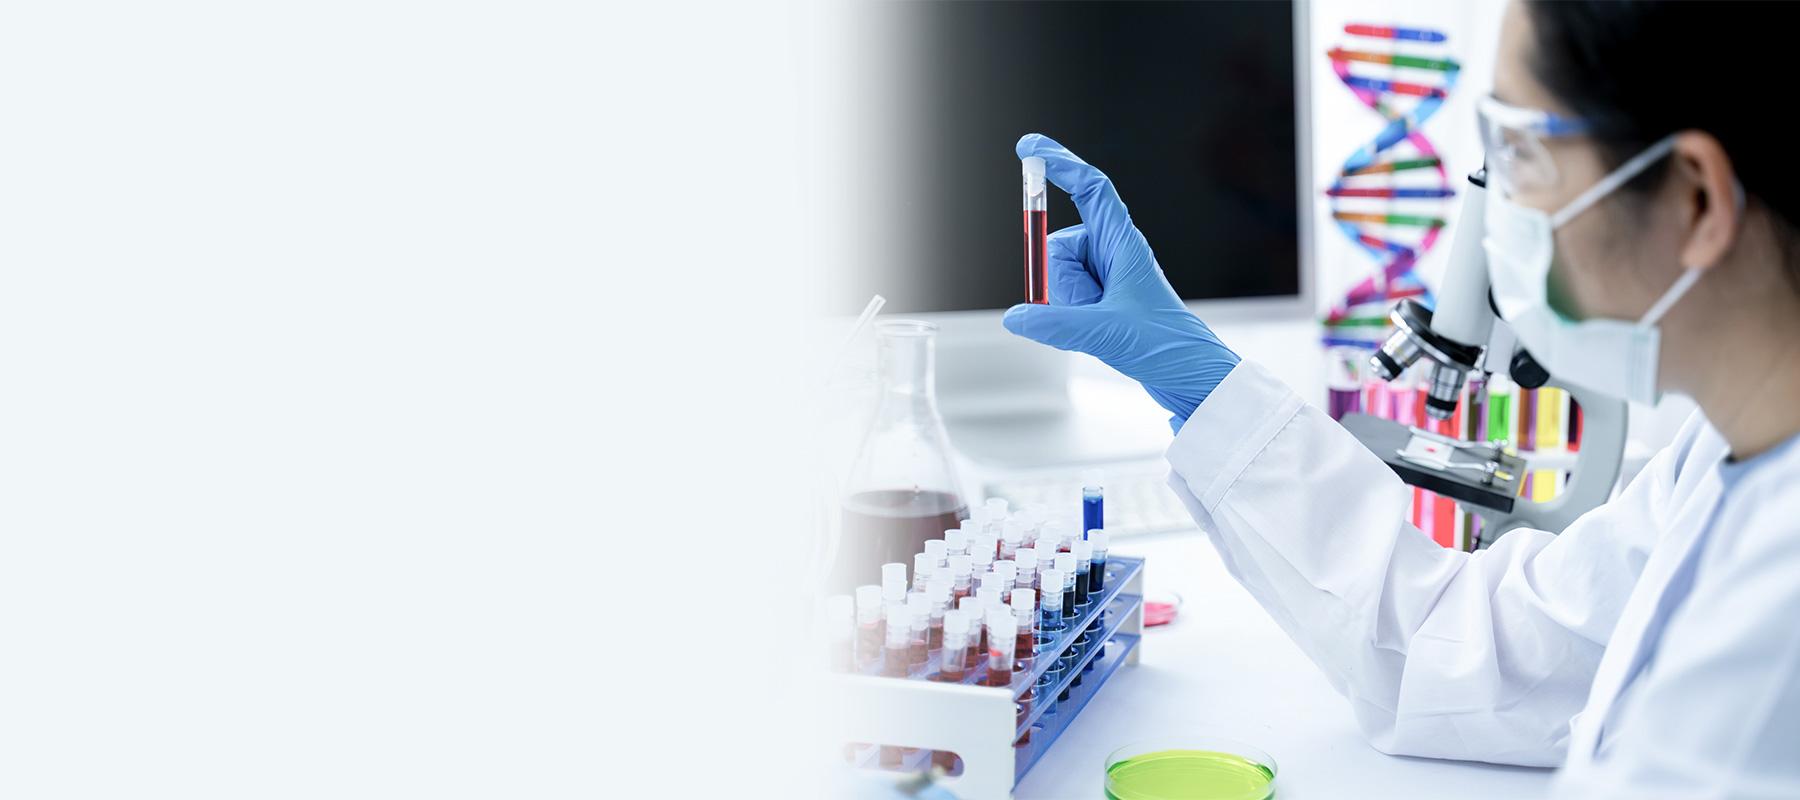 Eine Frau sitzt im Labor, trägt einen weißen Kittel, Handschuhe und einen Mundschutz. Sie untersucht eine Blutprobe auf DNA Auffälligkeiten..